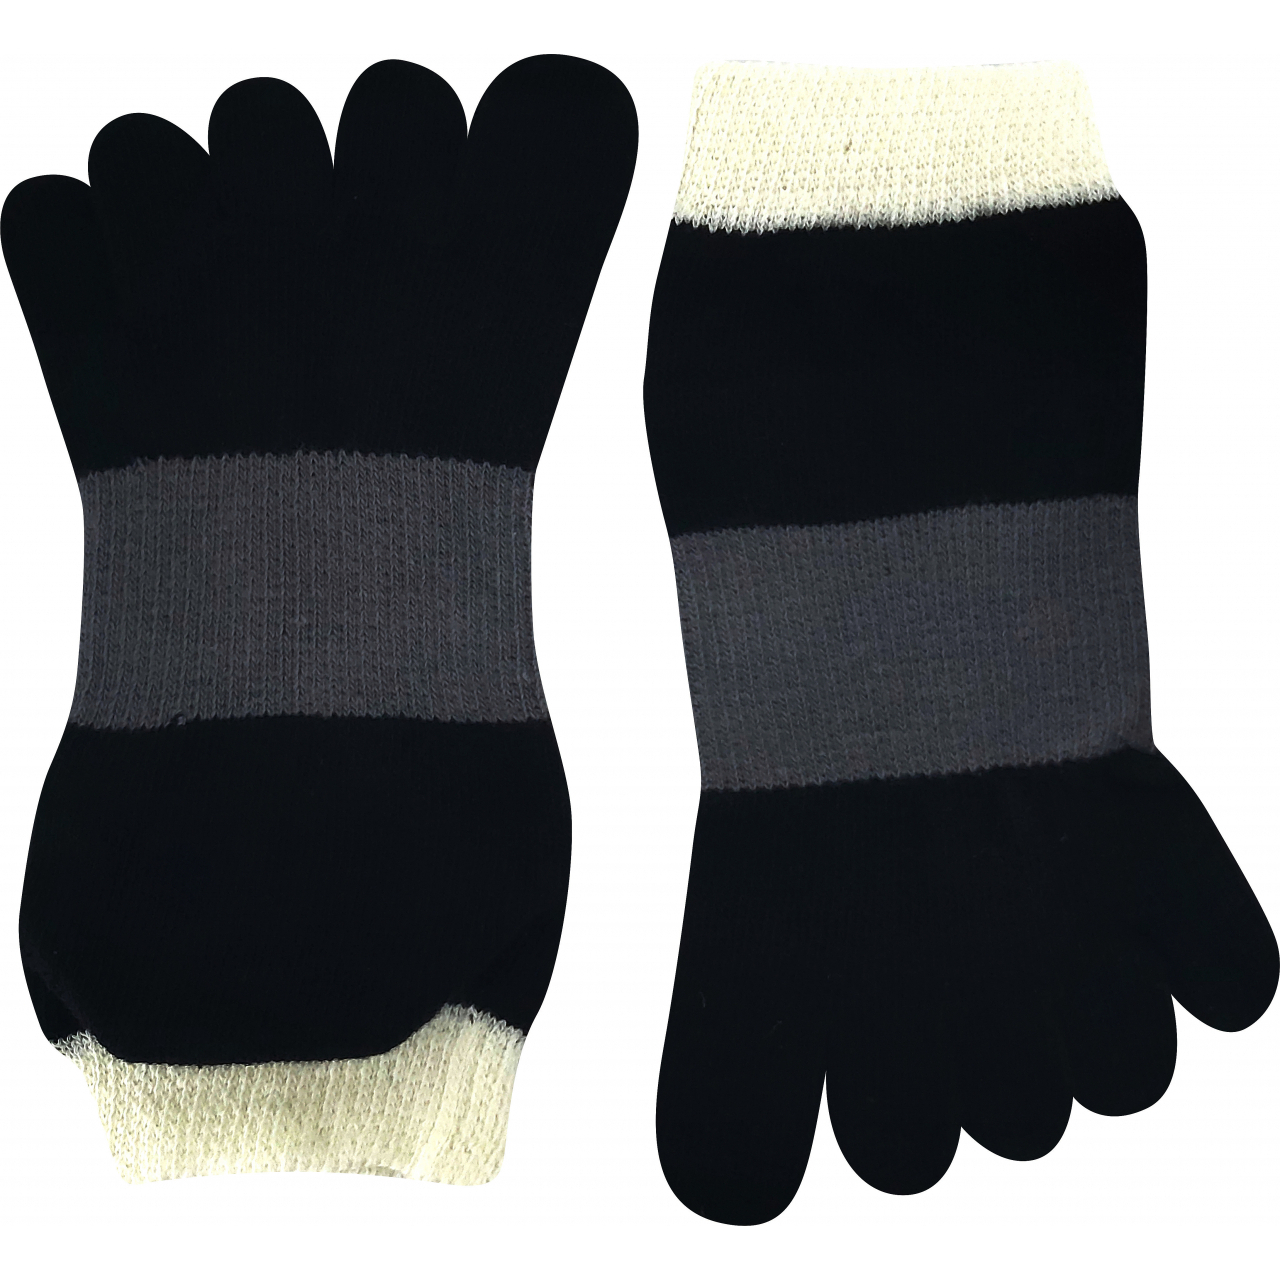 Ponožky unisex Boma Prstan-a 11 - černé-šedé, 36-41